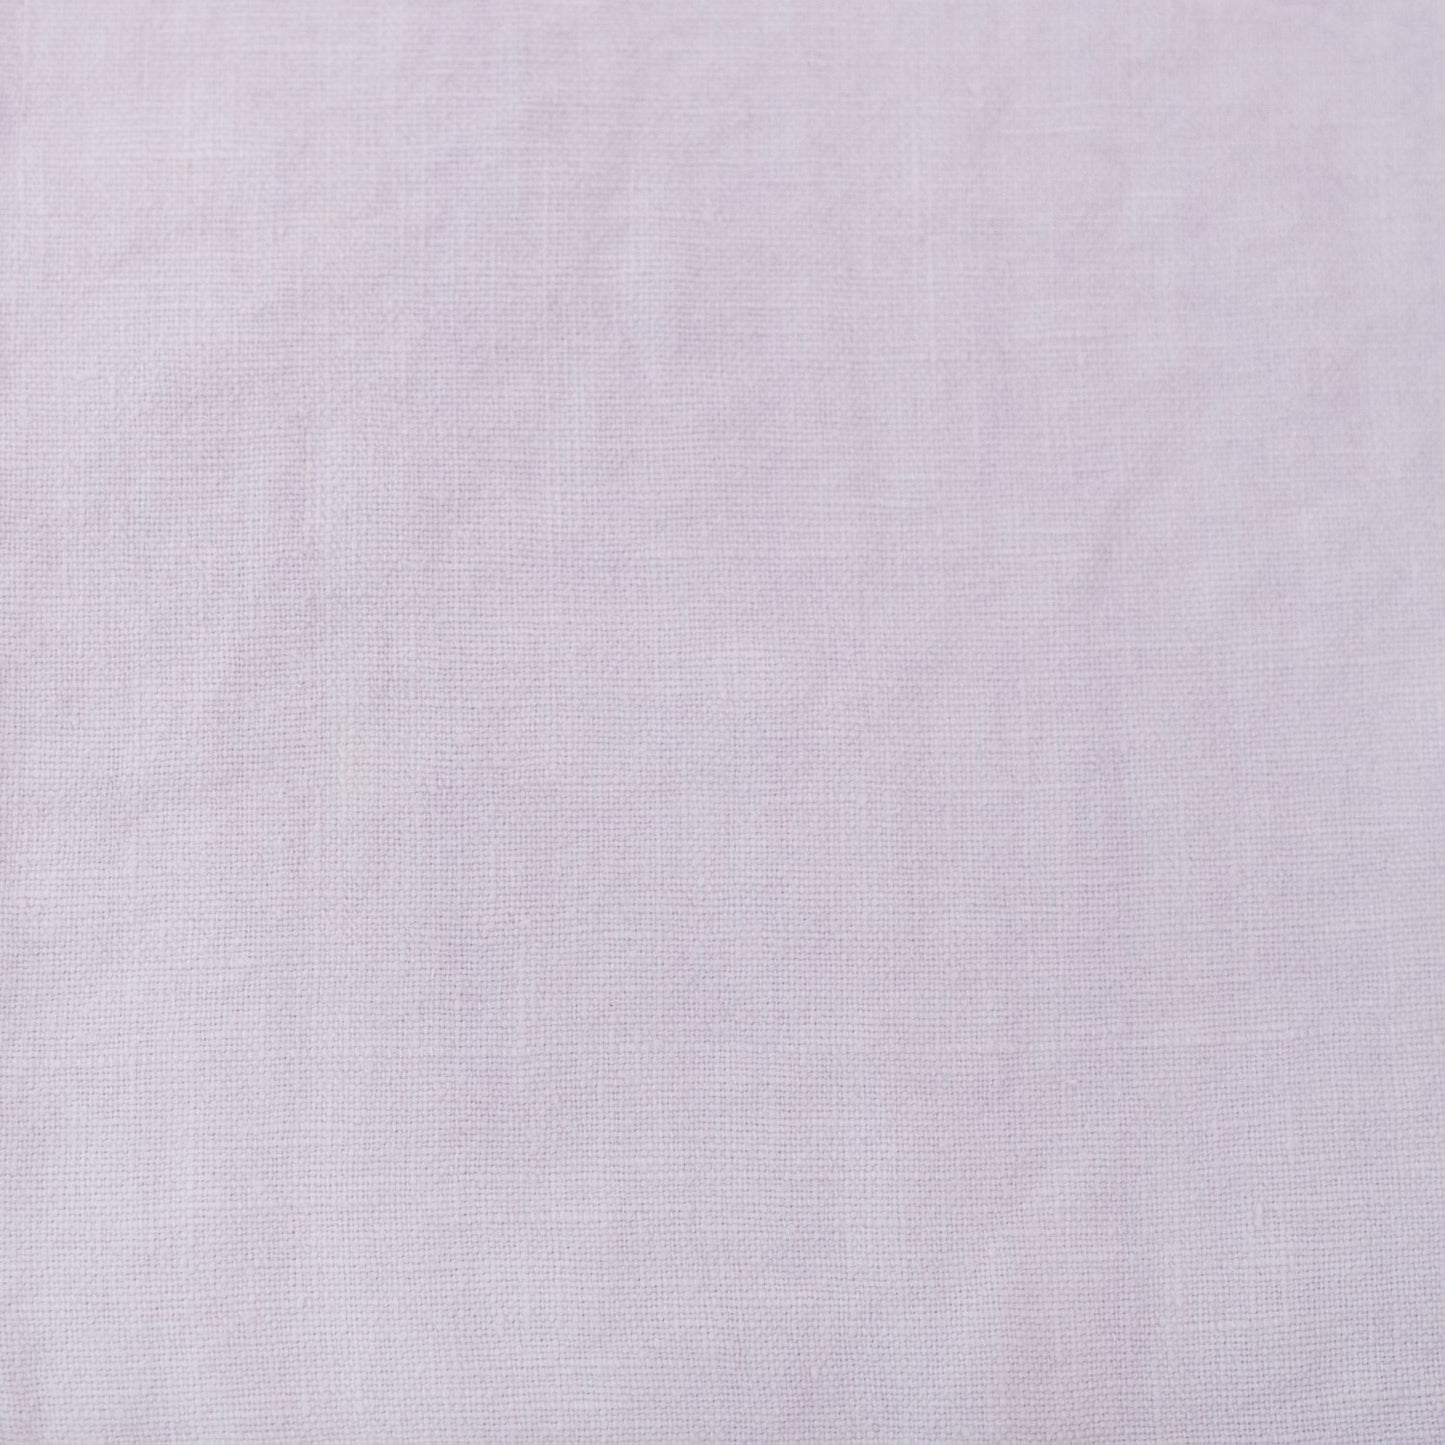 Small Bag Lavender Fog Linen